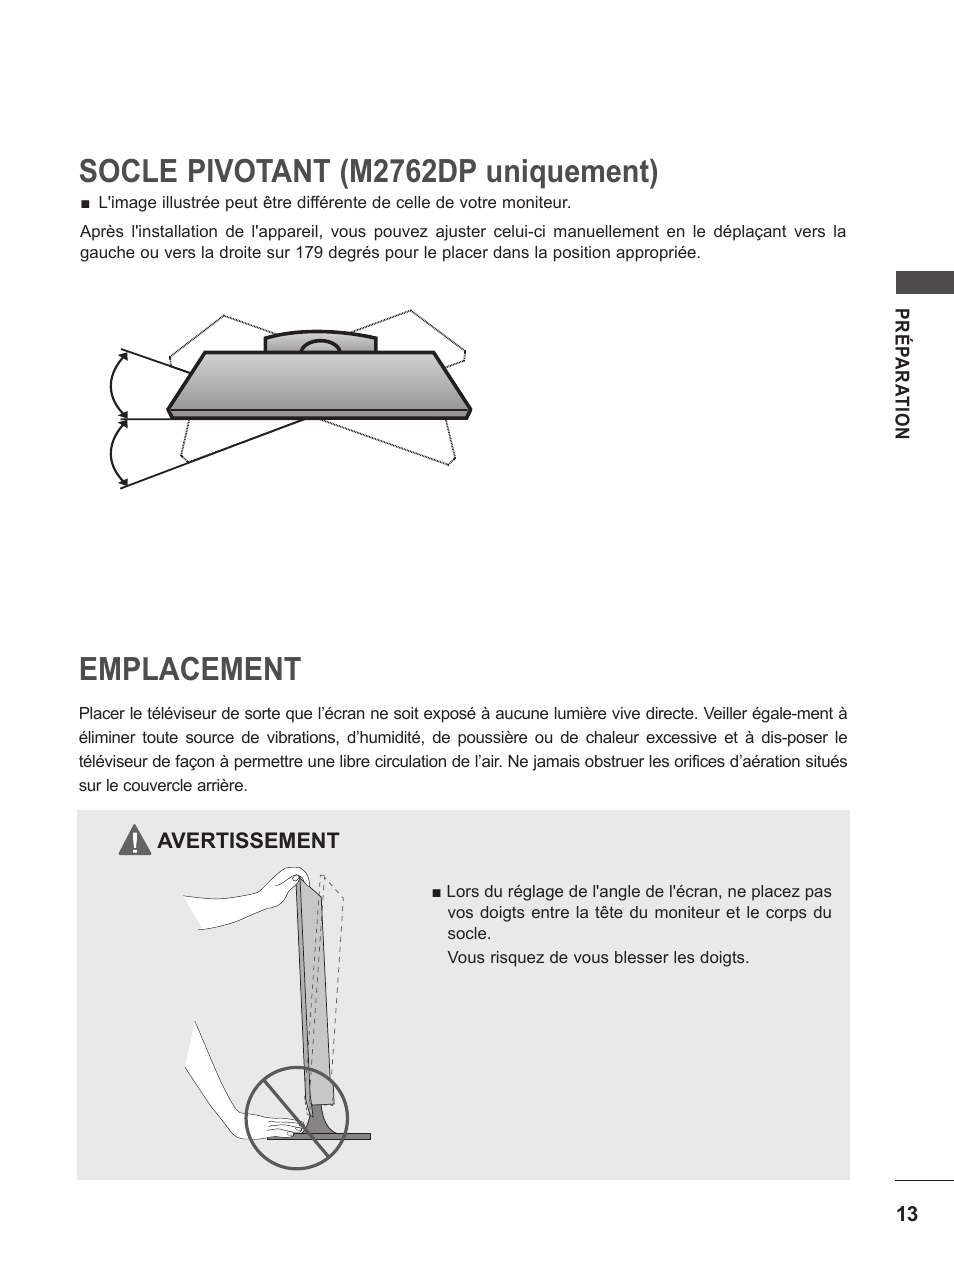 Socle pivotant (m2762dp uniquement), Emplacement | LG M2262D-PC Manuel d'utilisation | Page 13 / 154